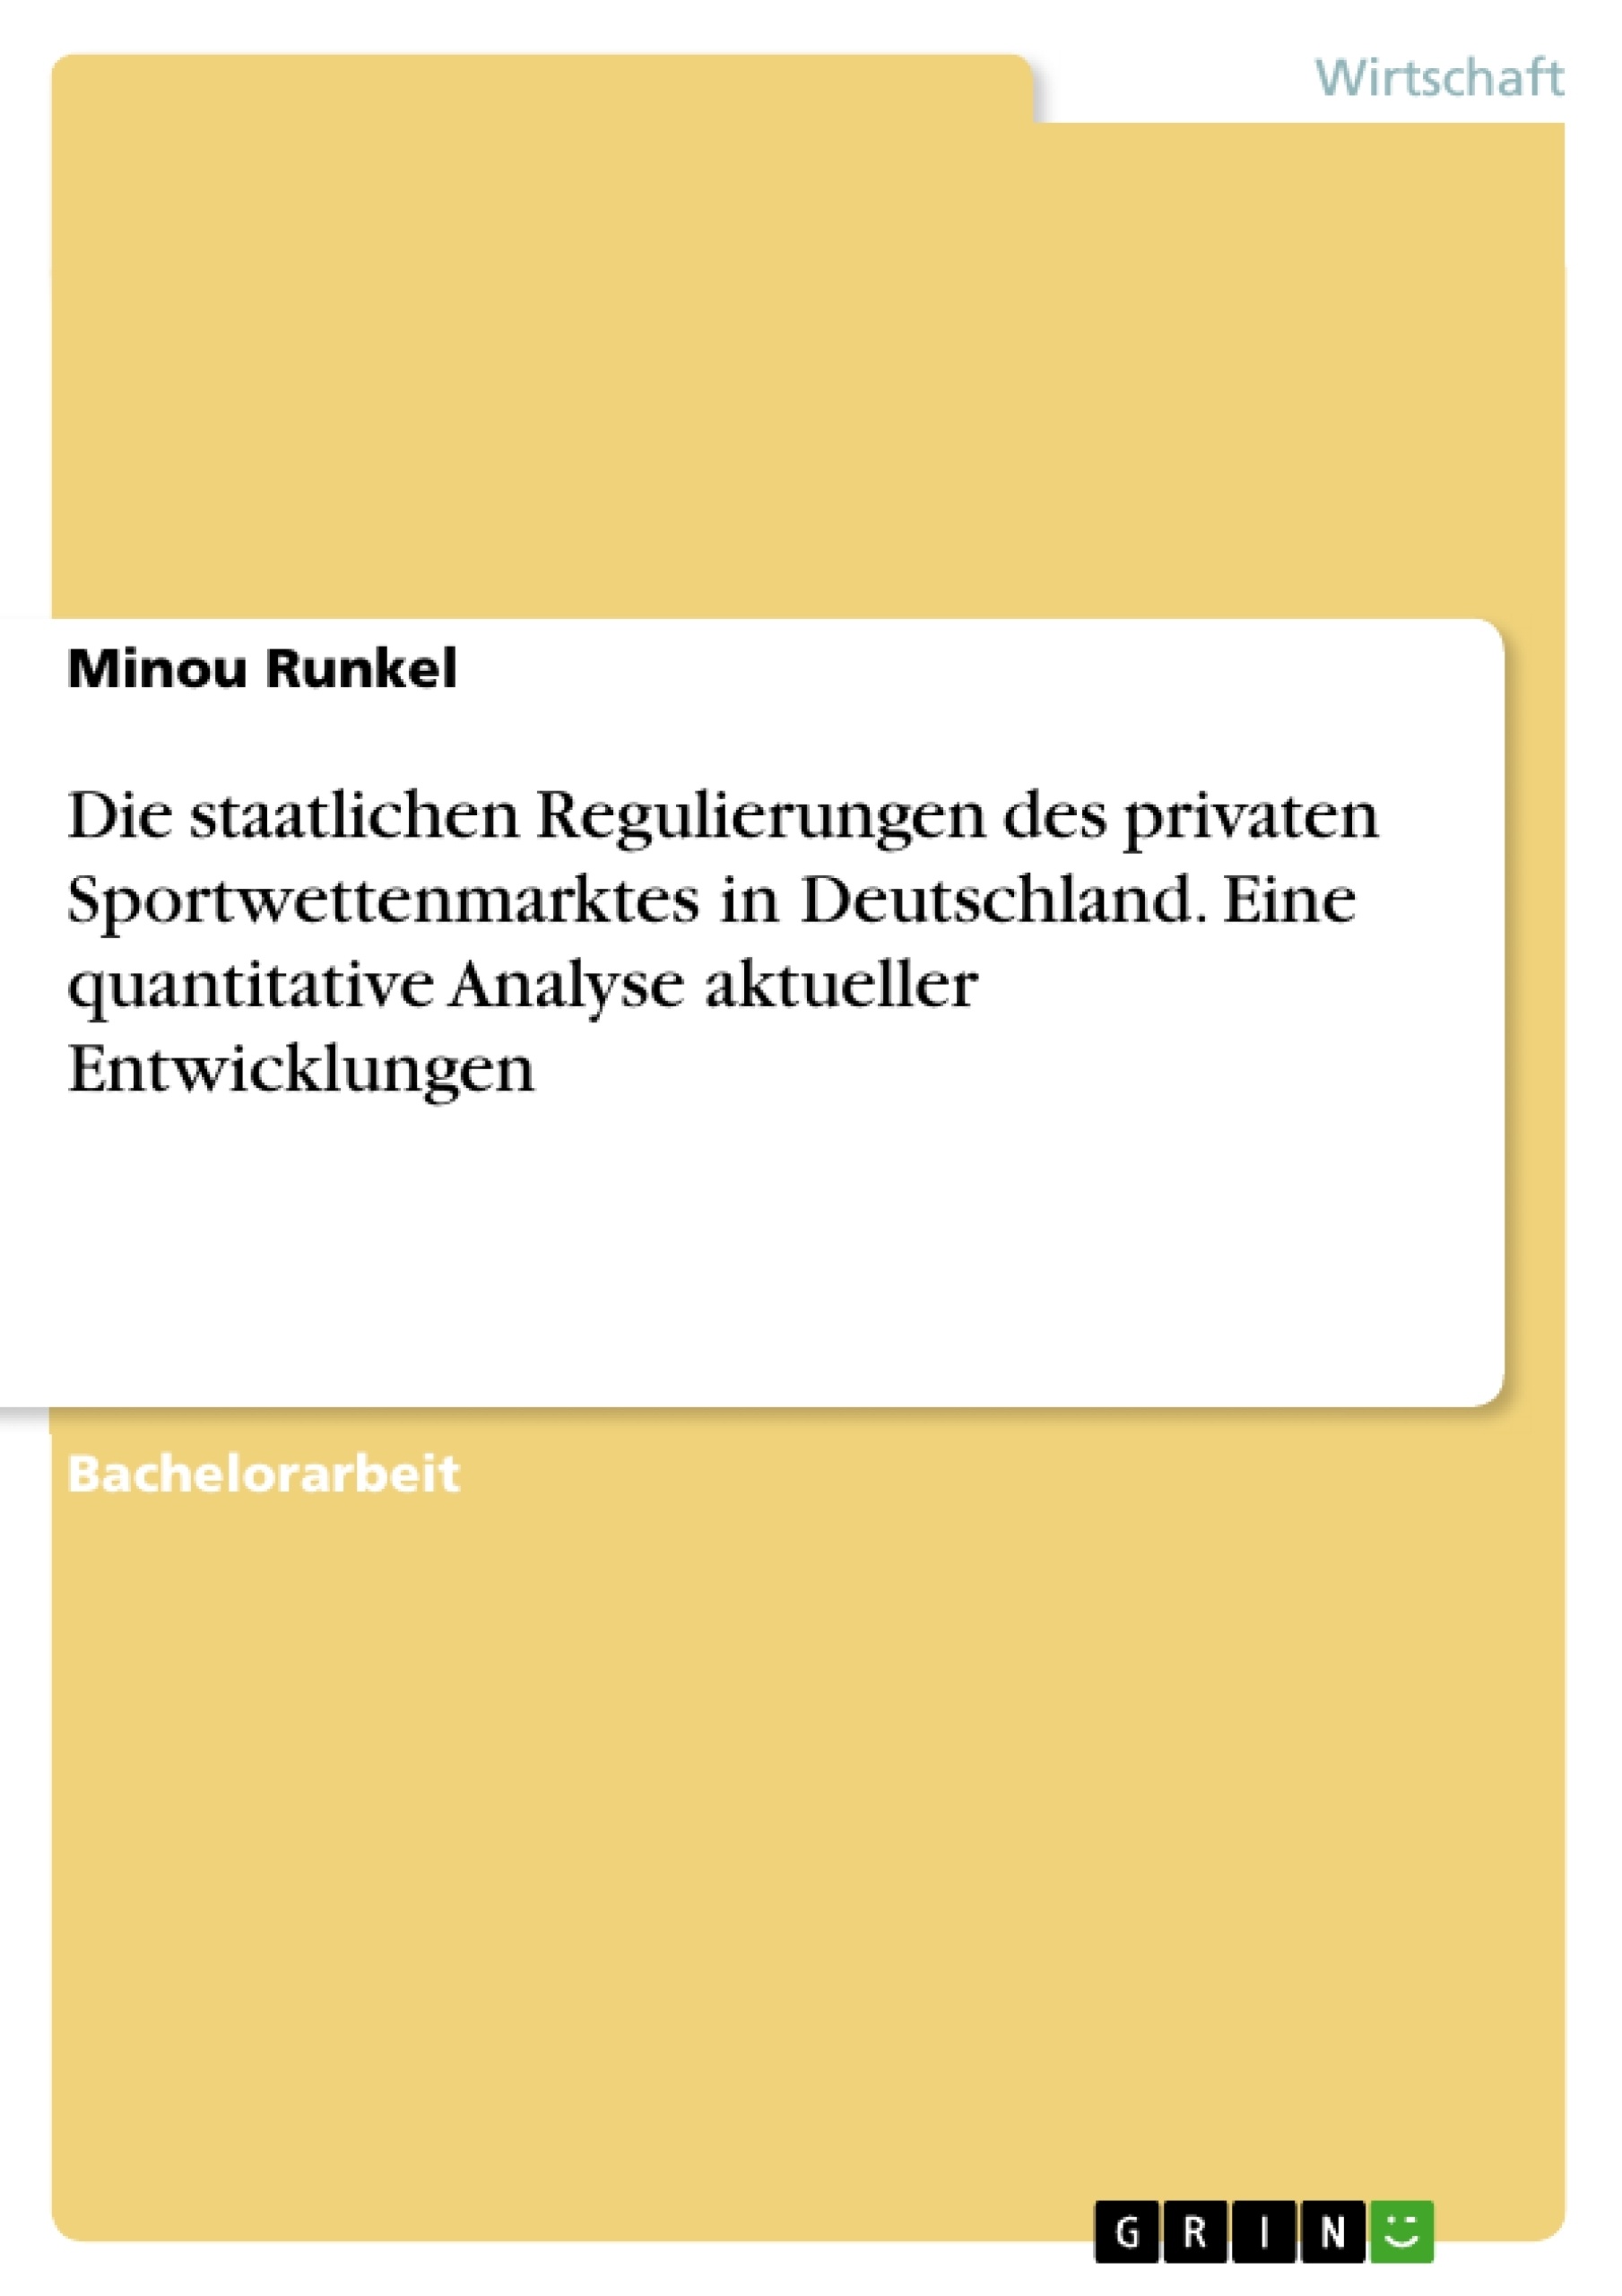 Title: Die staatlichen Regulierungen des privaten Sportwettenmarktes in Deutschland. Eine quantitative Analyse aktueller Entwicklungen